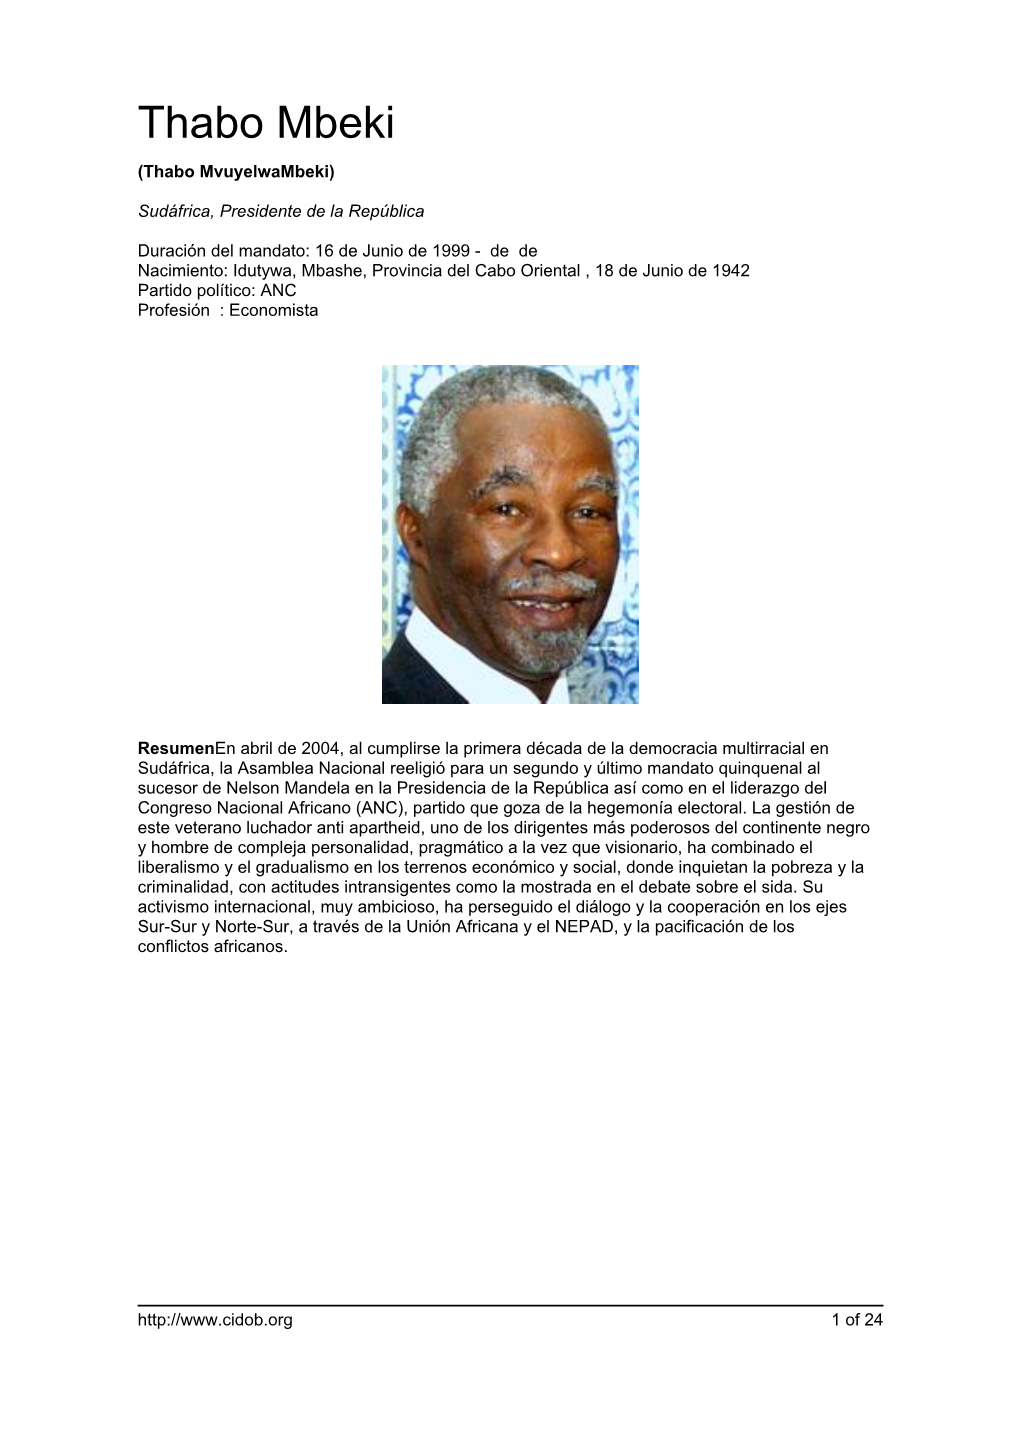 Thabo Mbeki (Thabo Mvuyelwambeki)